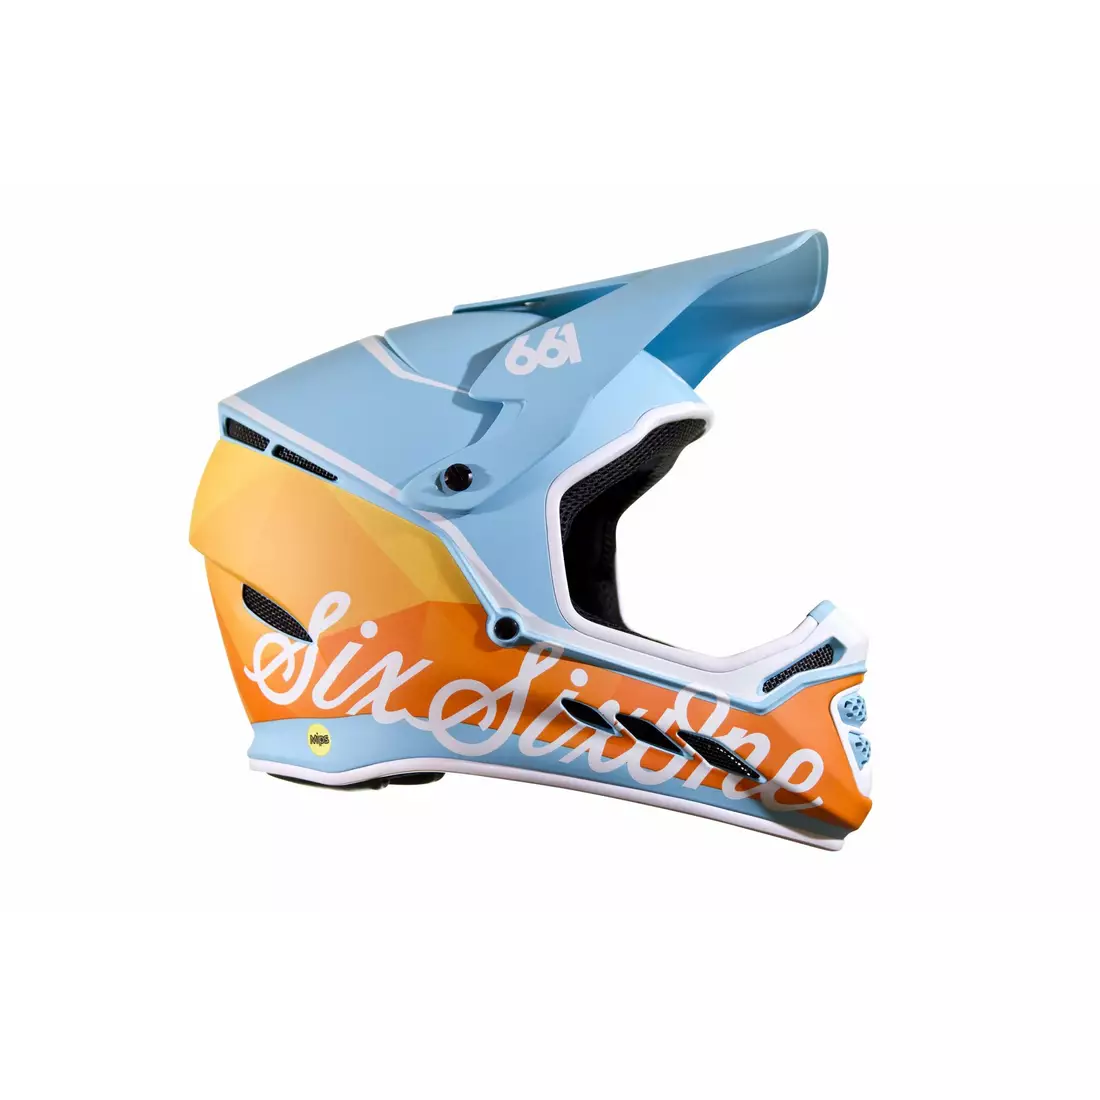 SisSixOne 661 RESET GEO BLORANGE MIPS Kask rowerowy fullface błękitno-pomarańczowy 